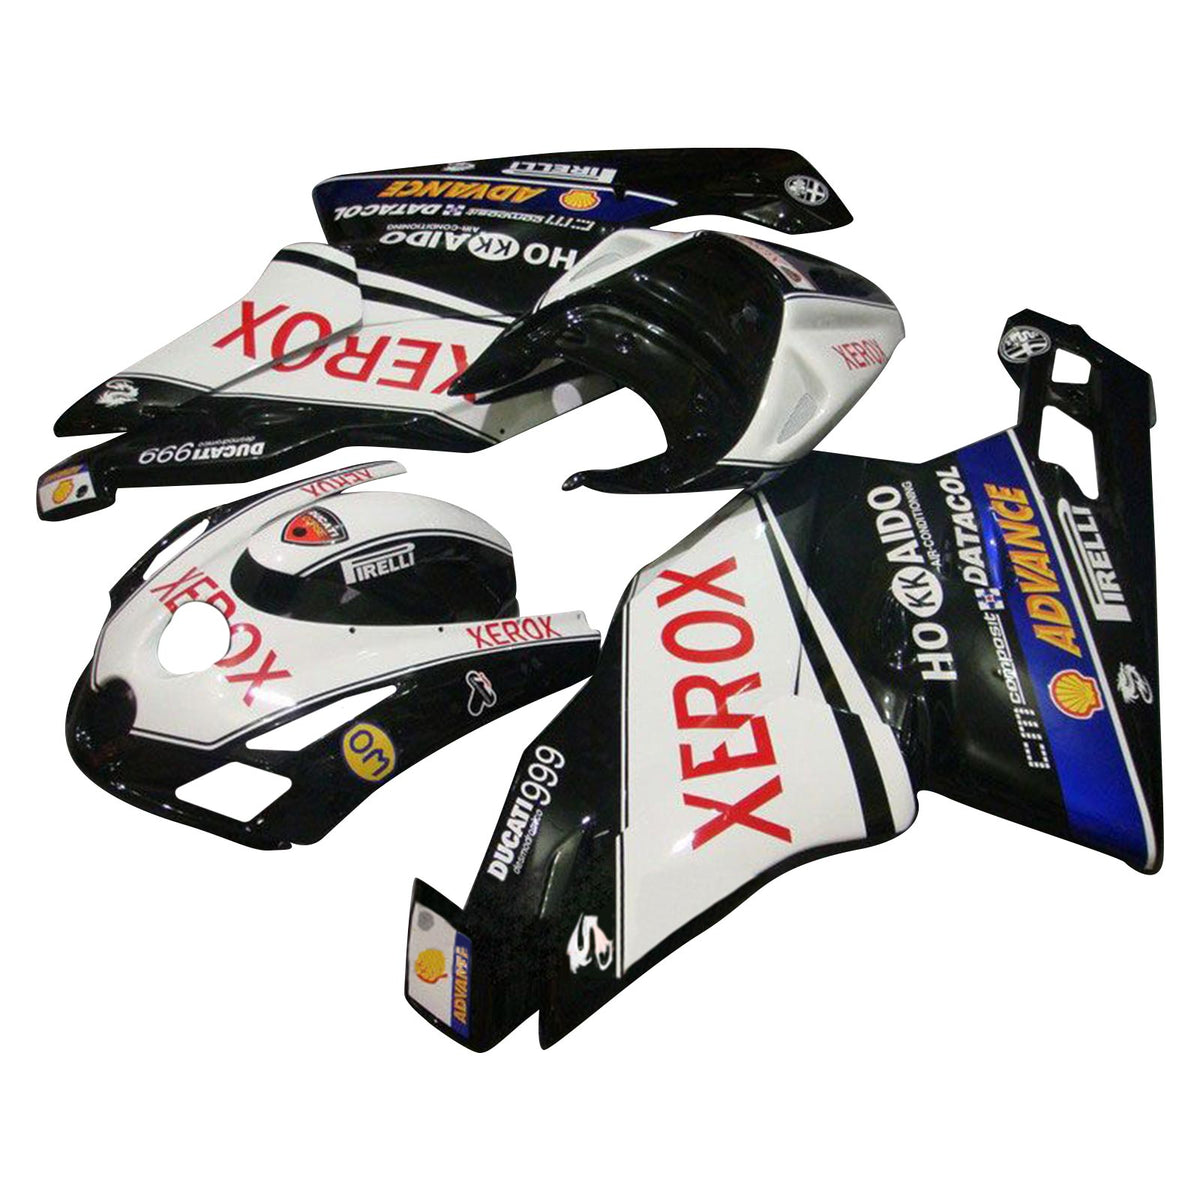 Amotopart 2003 2004 Ducati 999 749 Kit carena Style3 in bianco e nero